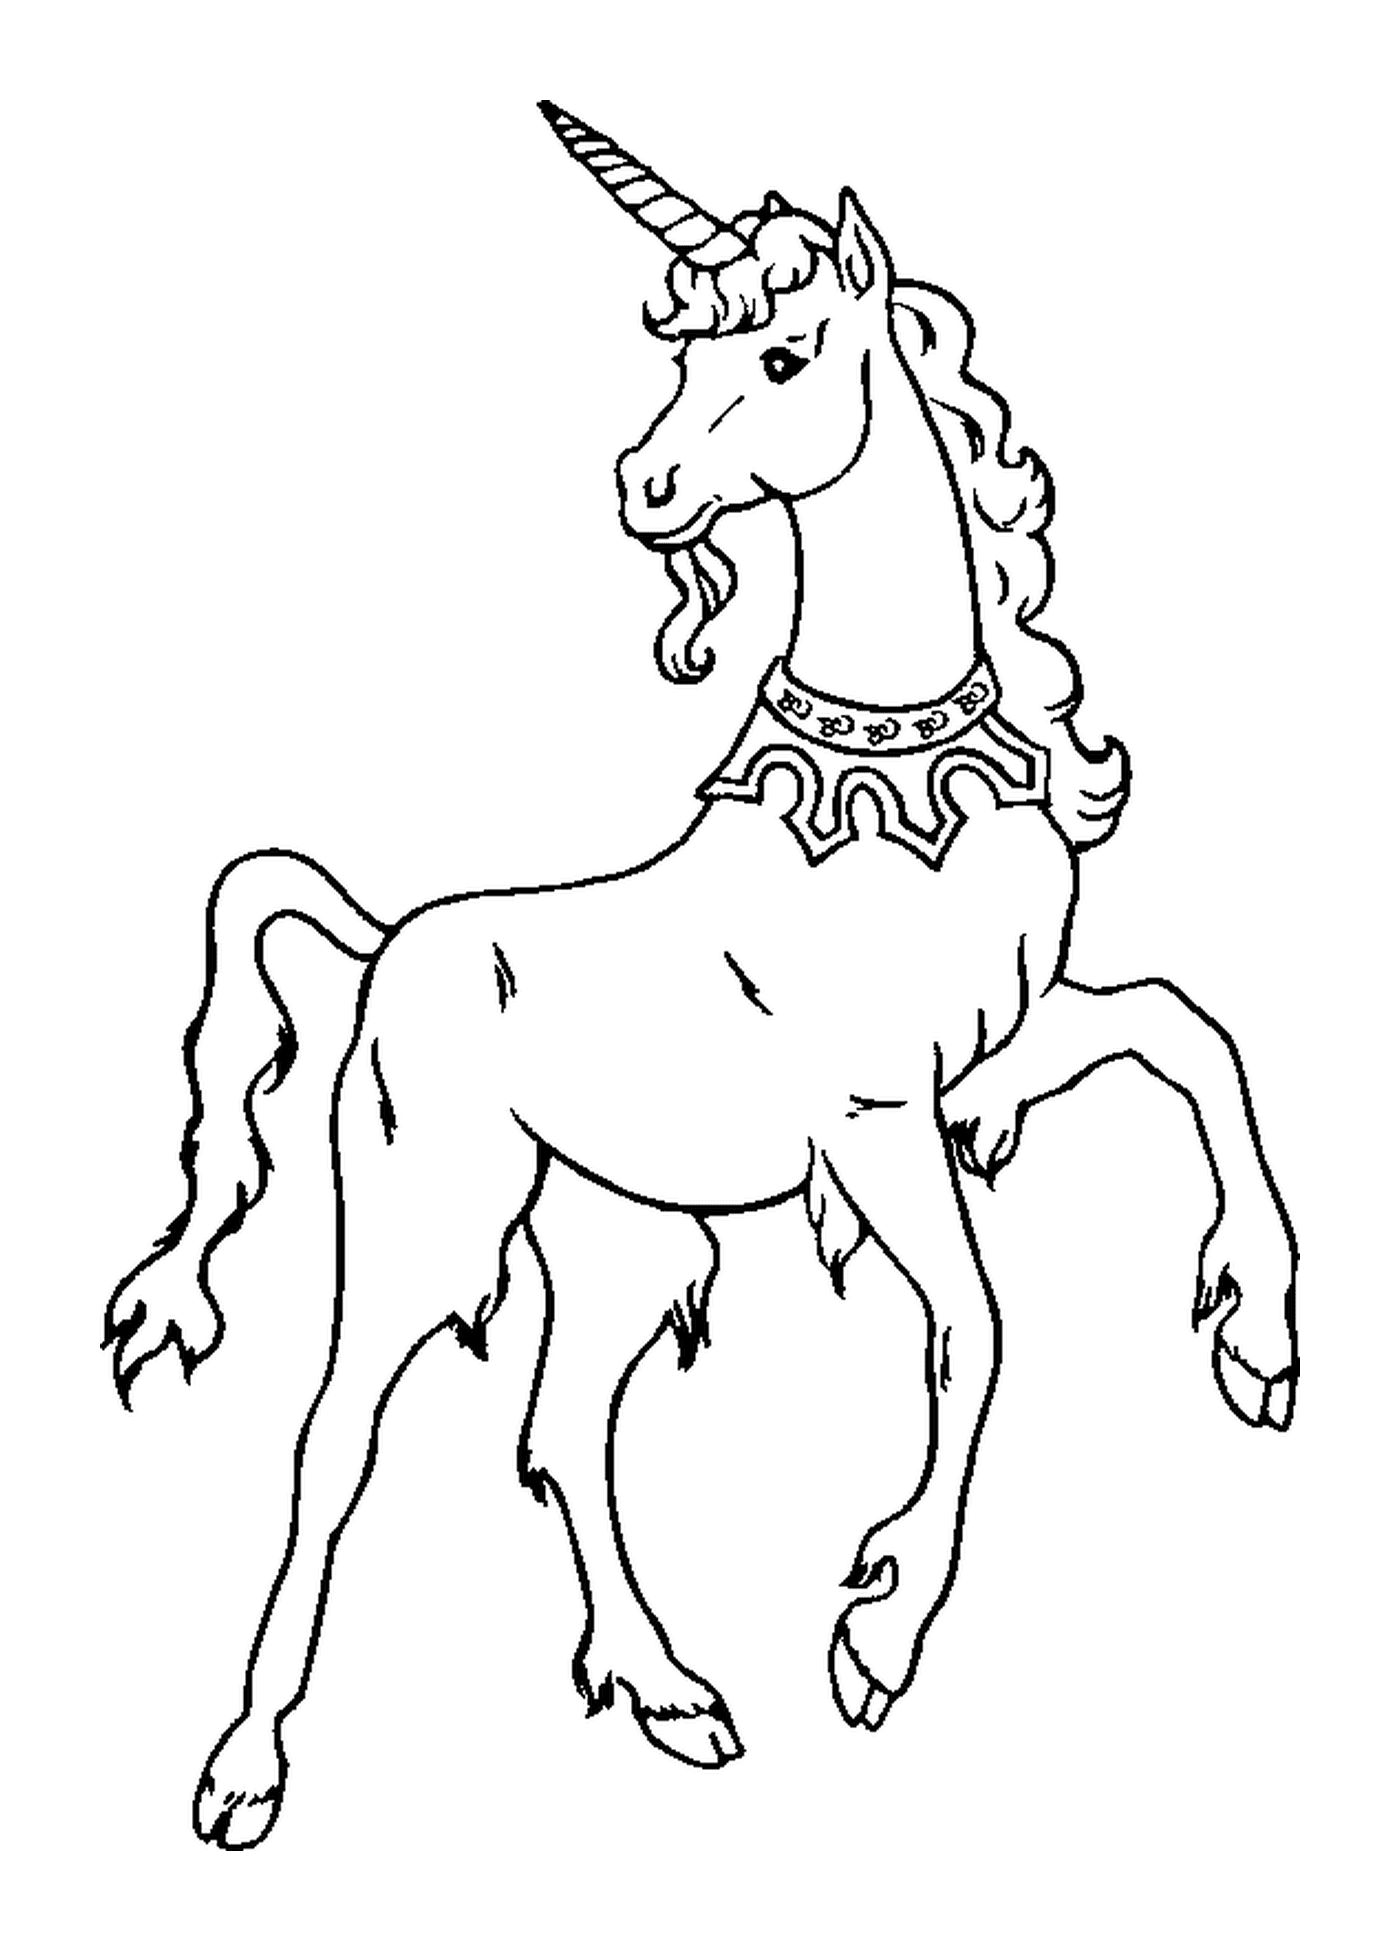  благородная и элегантная лошадь 